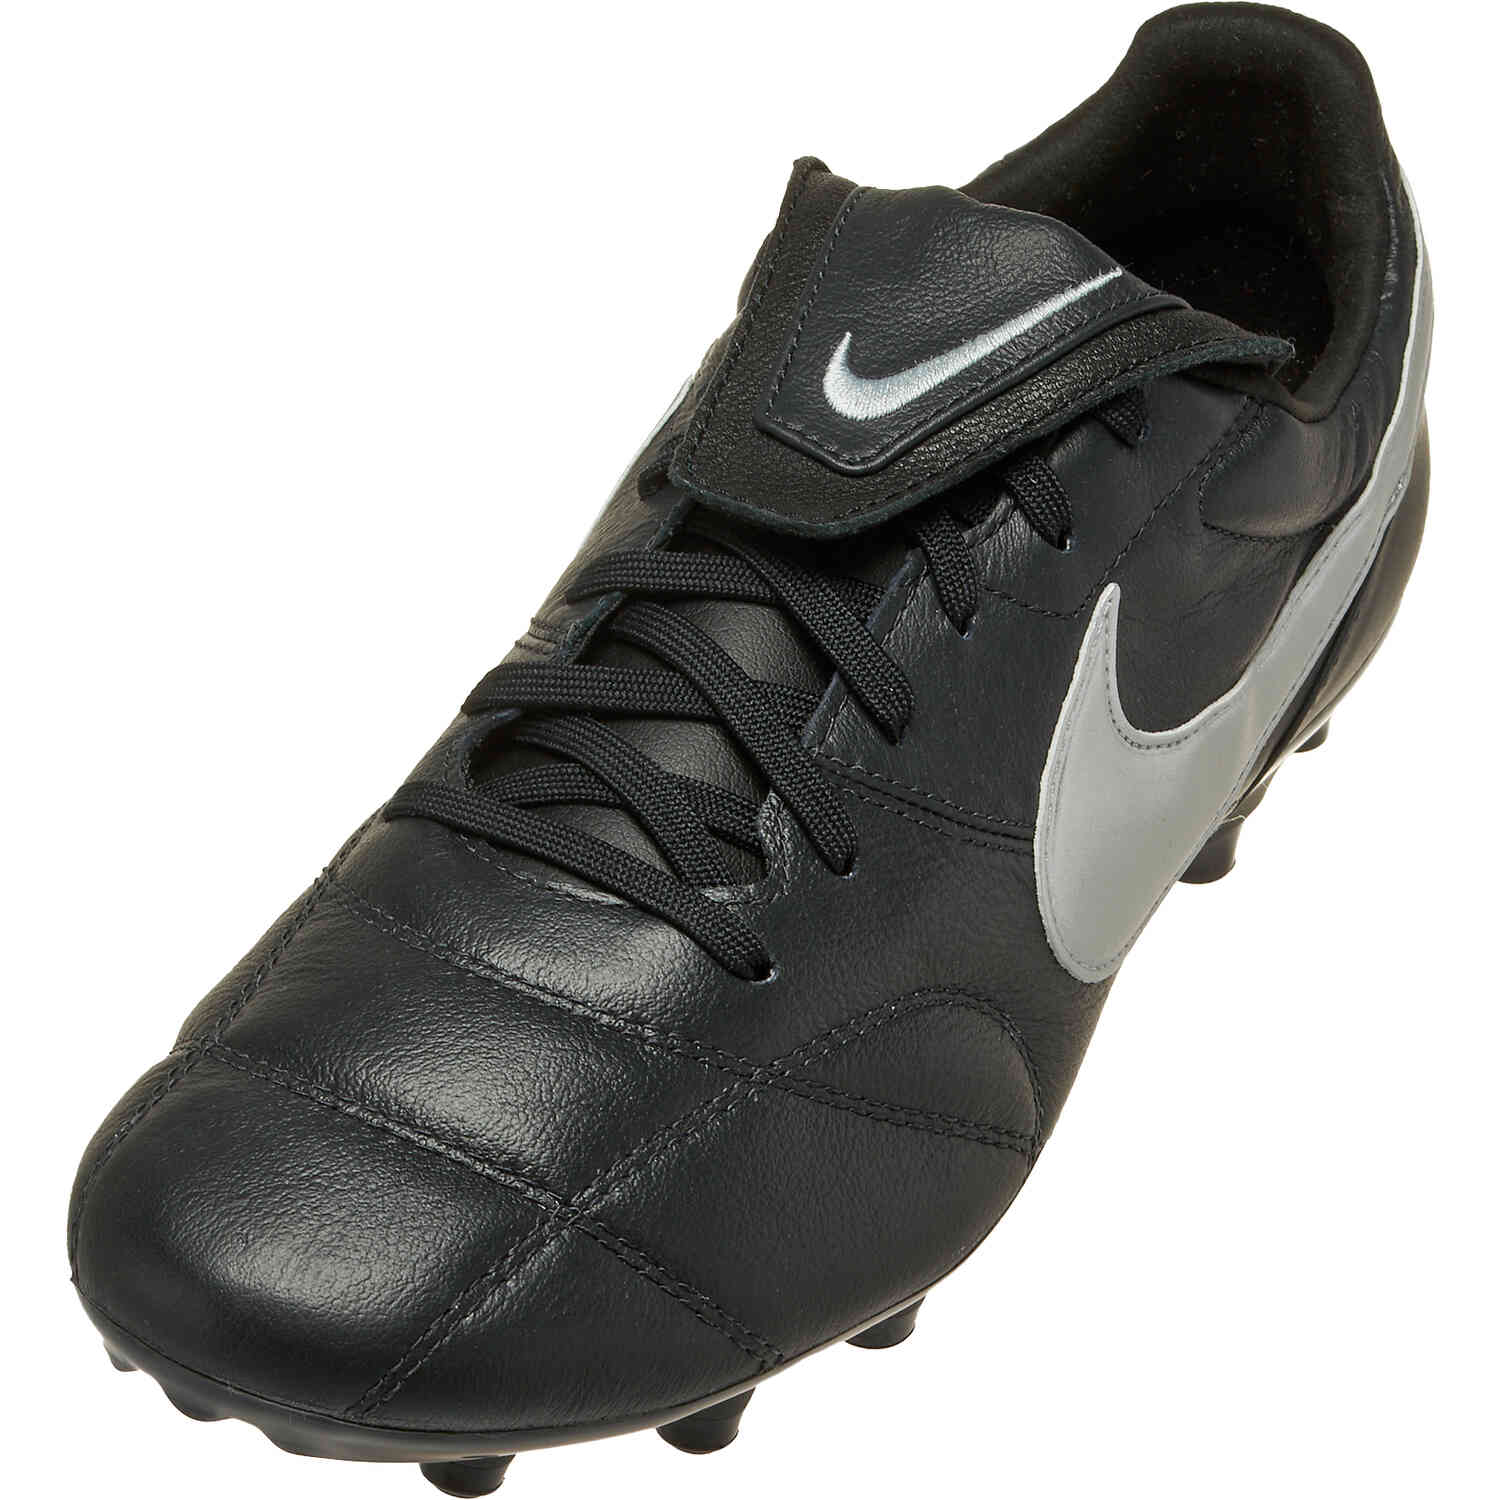 Nike Premier II FG - Off Noir & Metallic Silver with Black - SoccerPro